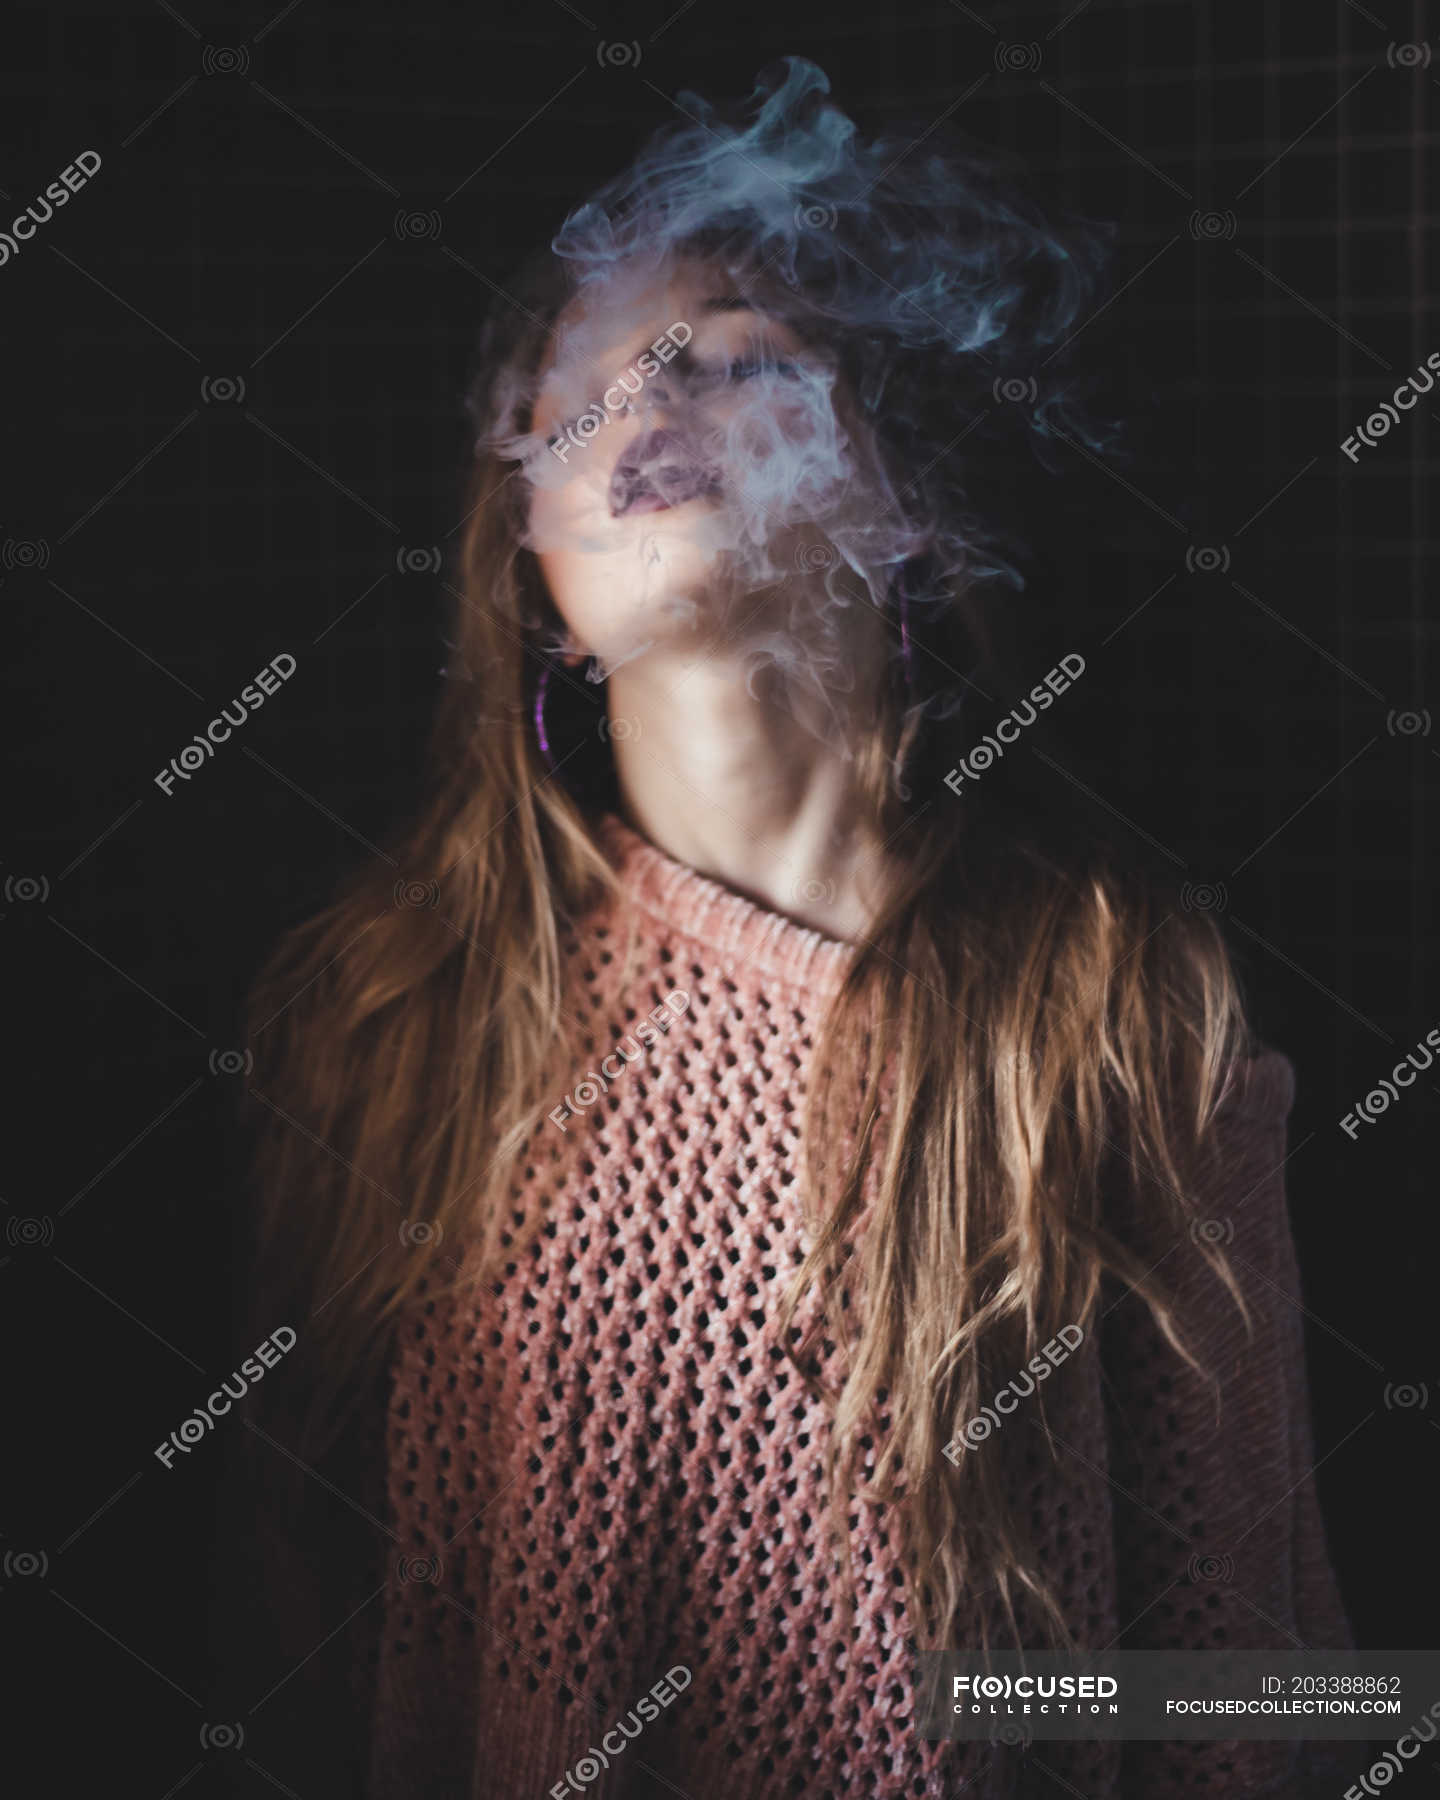 Sensual Smoking